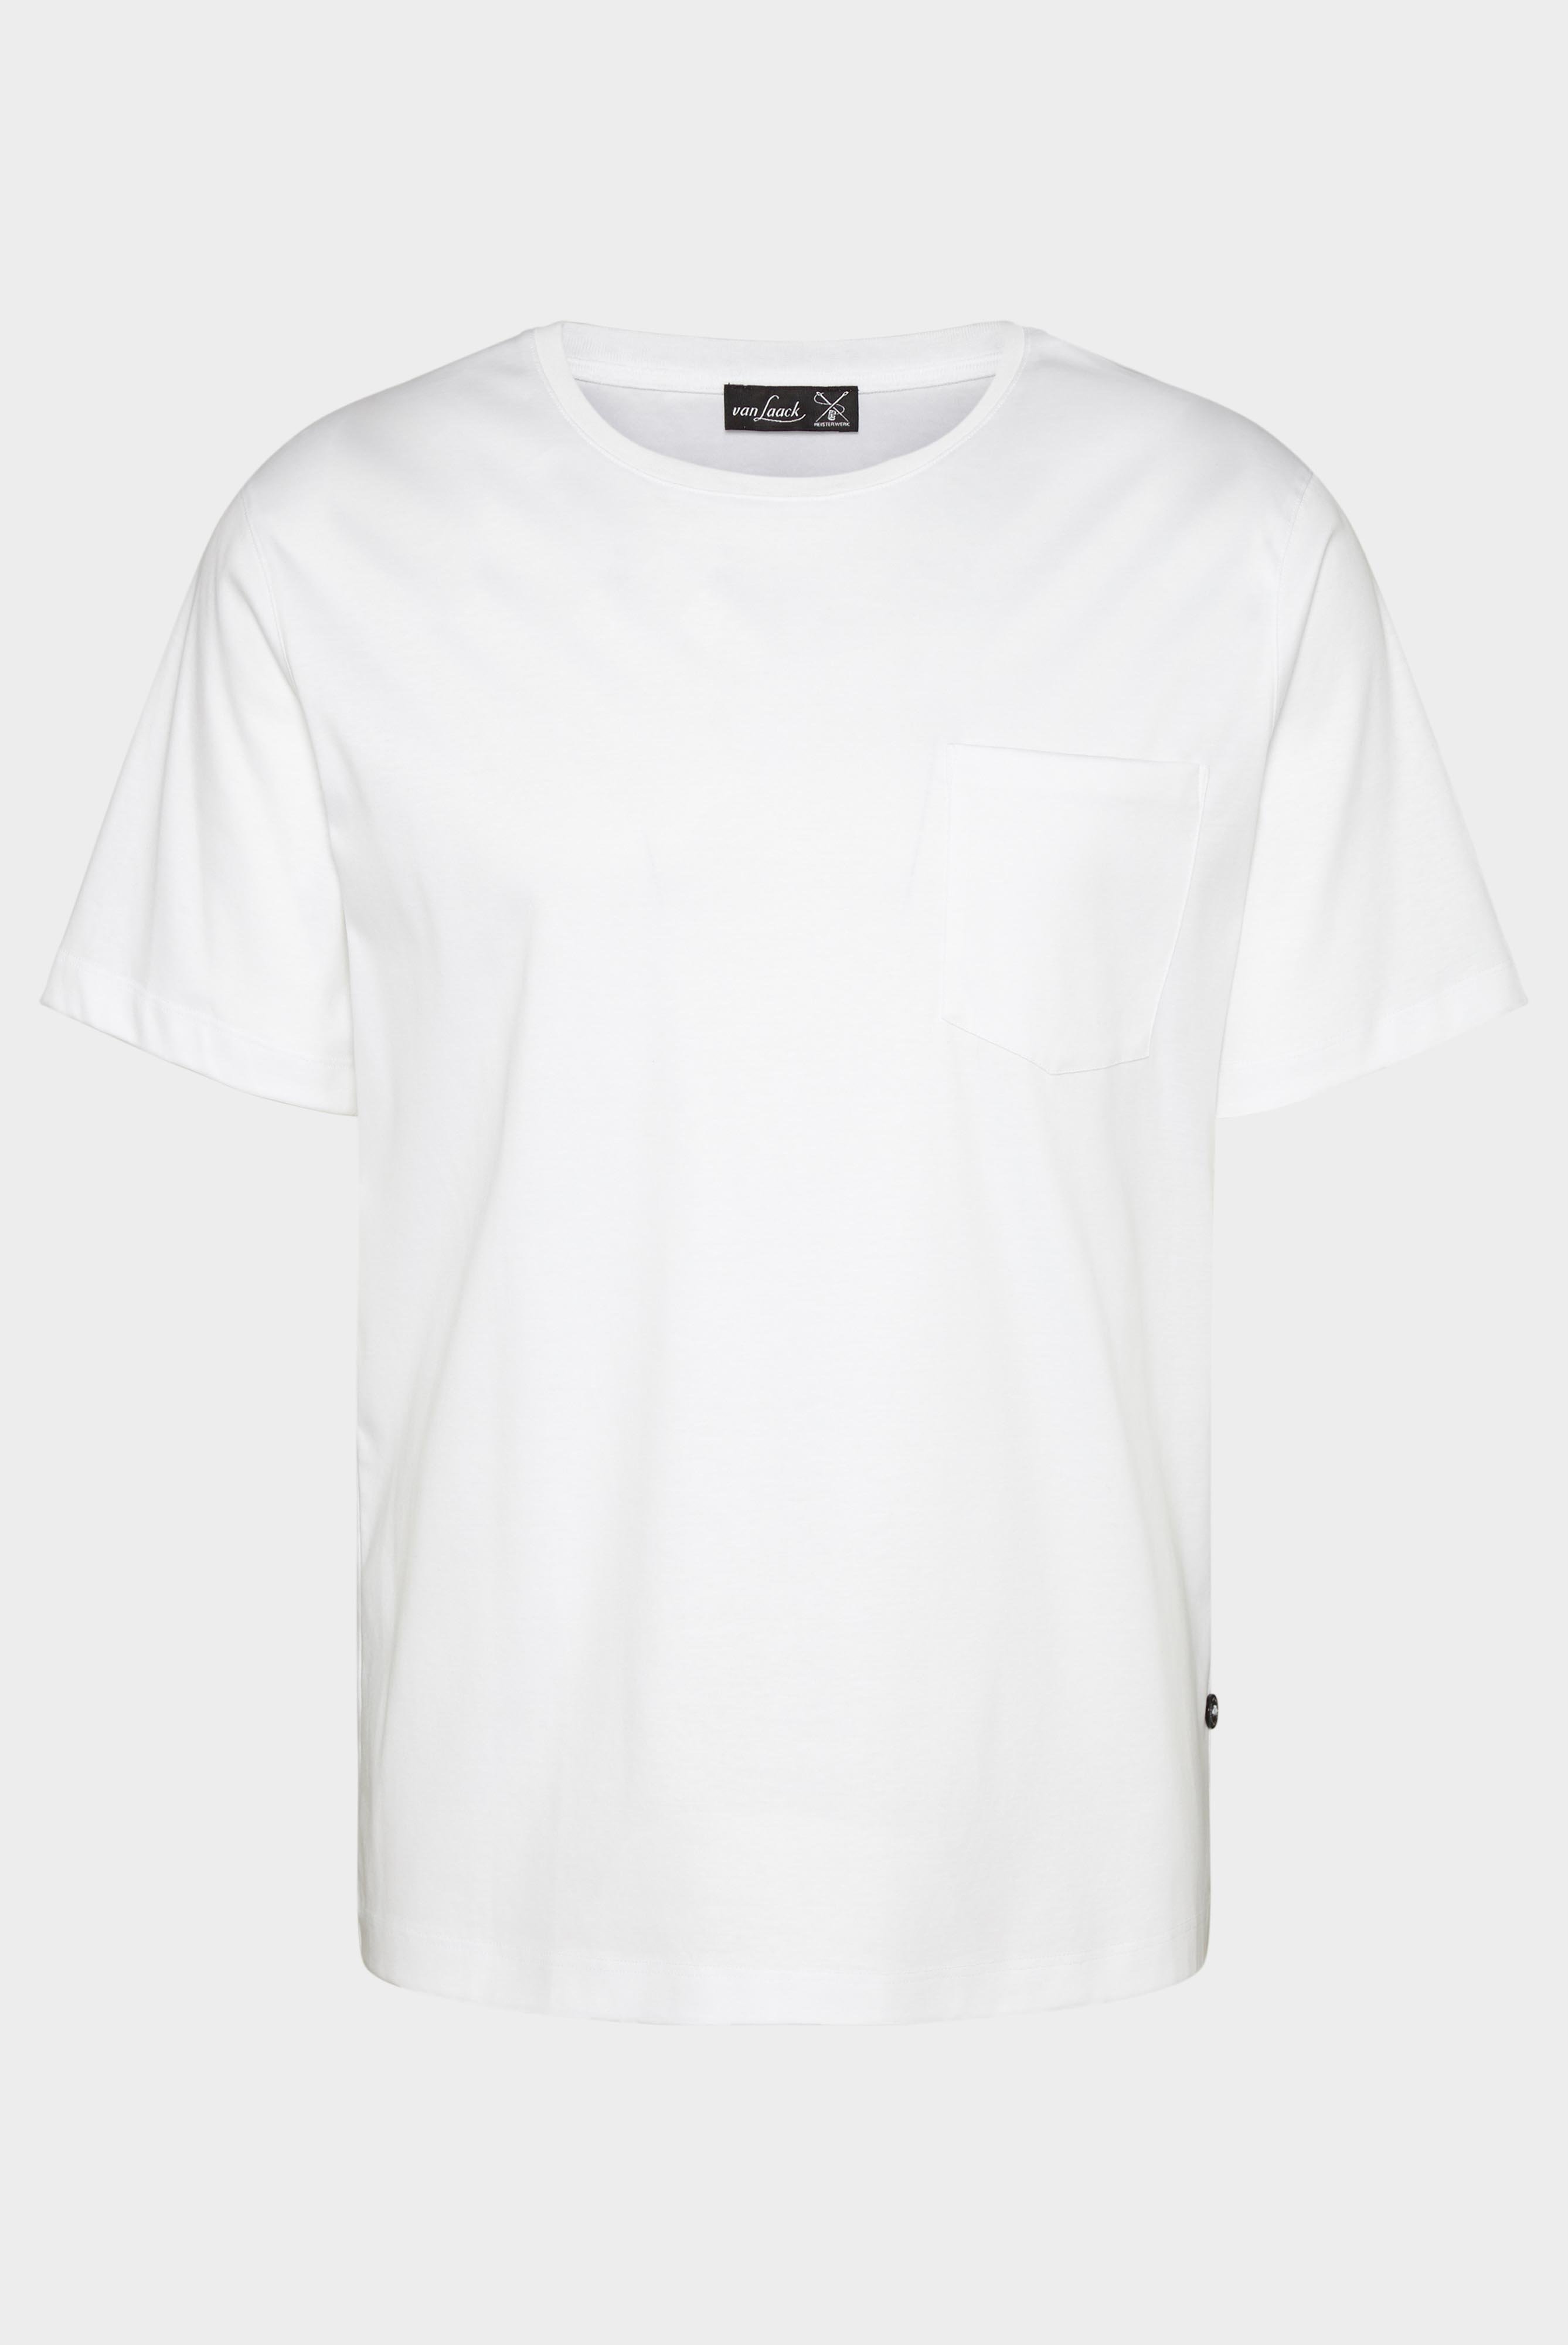 T-Shirts+Oversize Jersey T-Shirt mit Brusttasche+20.1776.GZ.180031.000.M